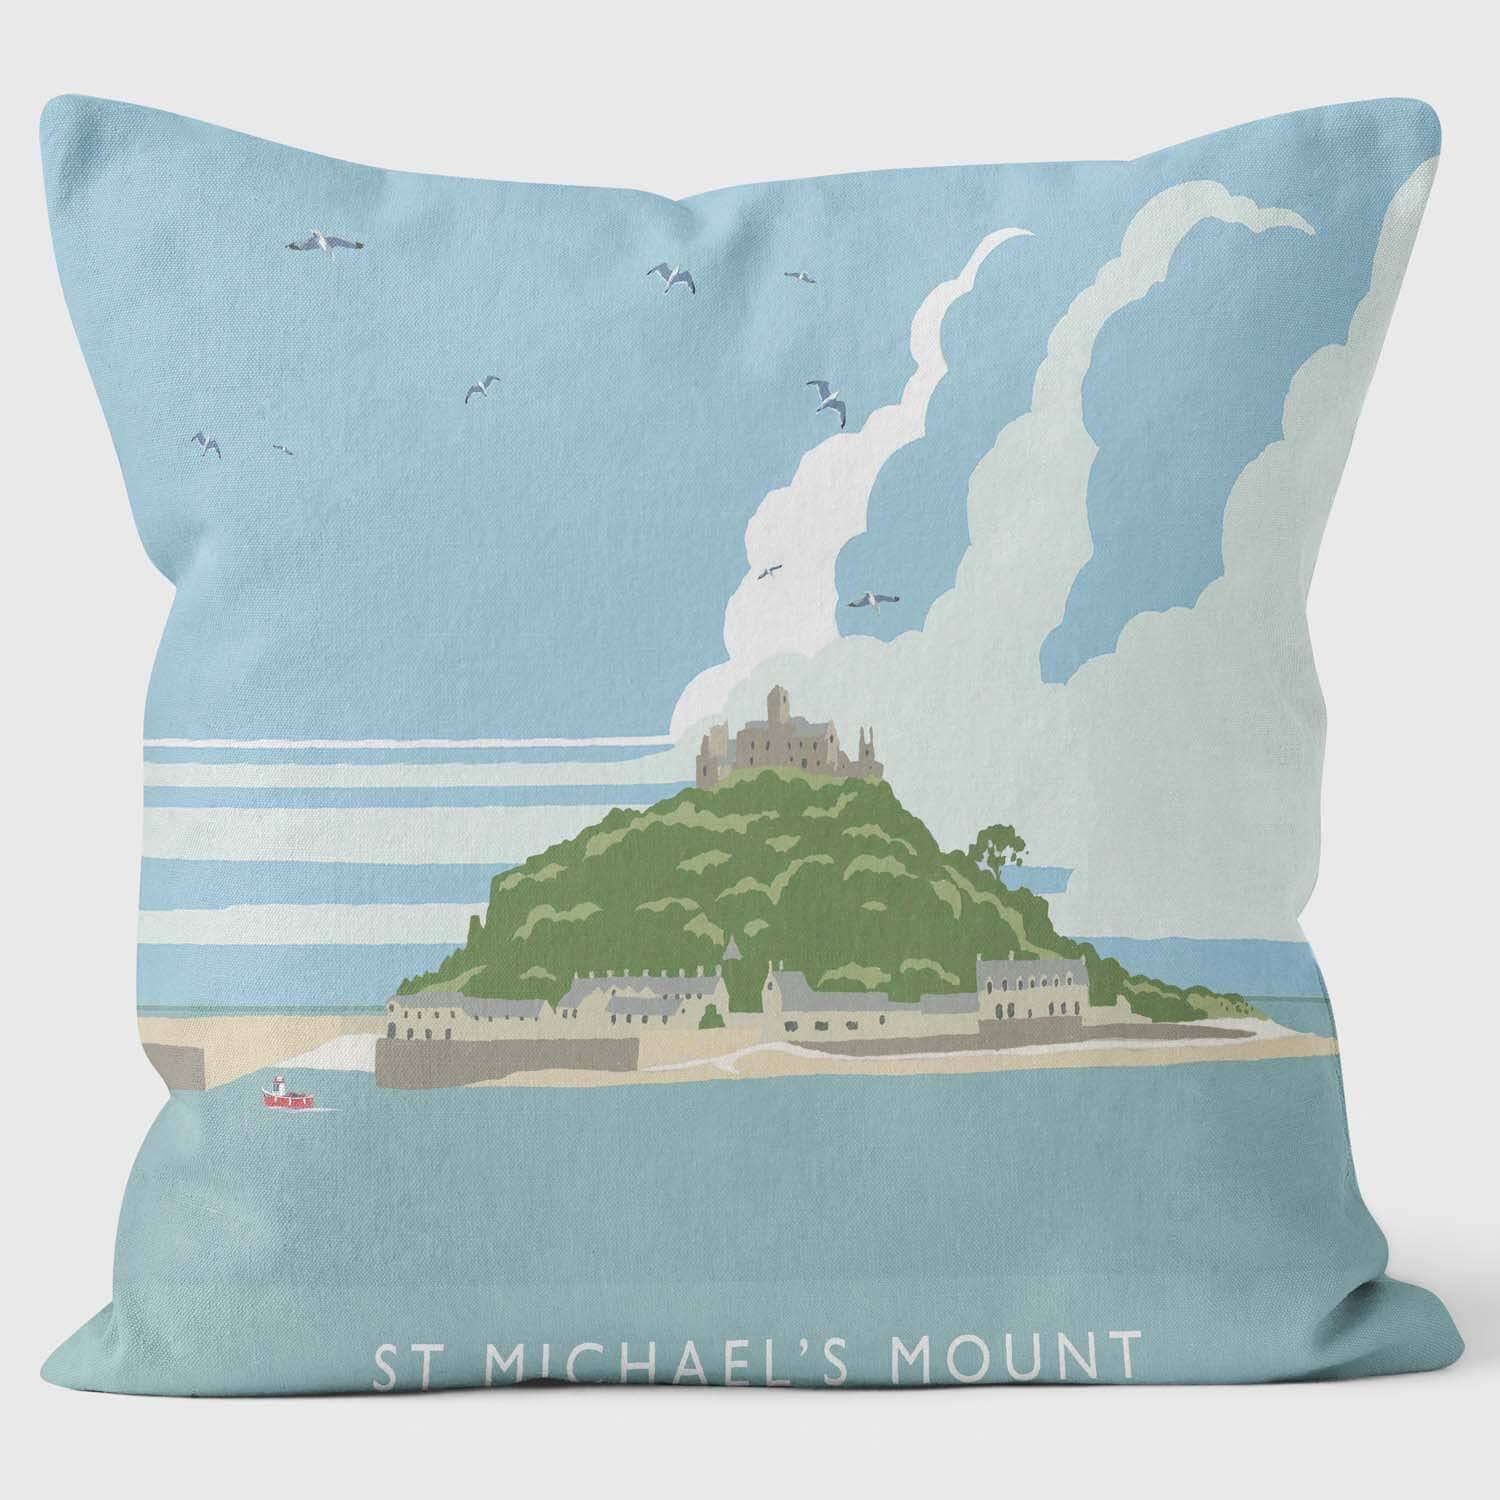 St. Michael Mount - Martin Wiscombe Cushion - Handmade Cushions UK - WeLoveCushions